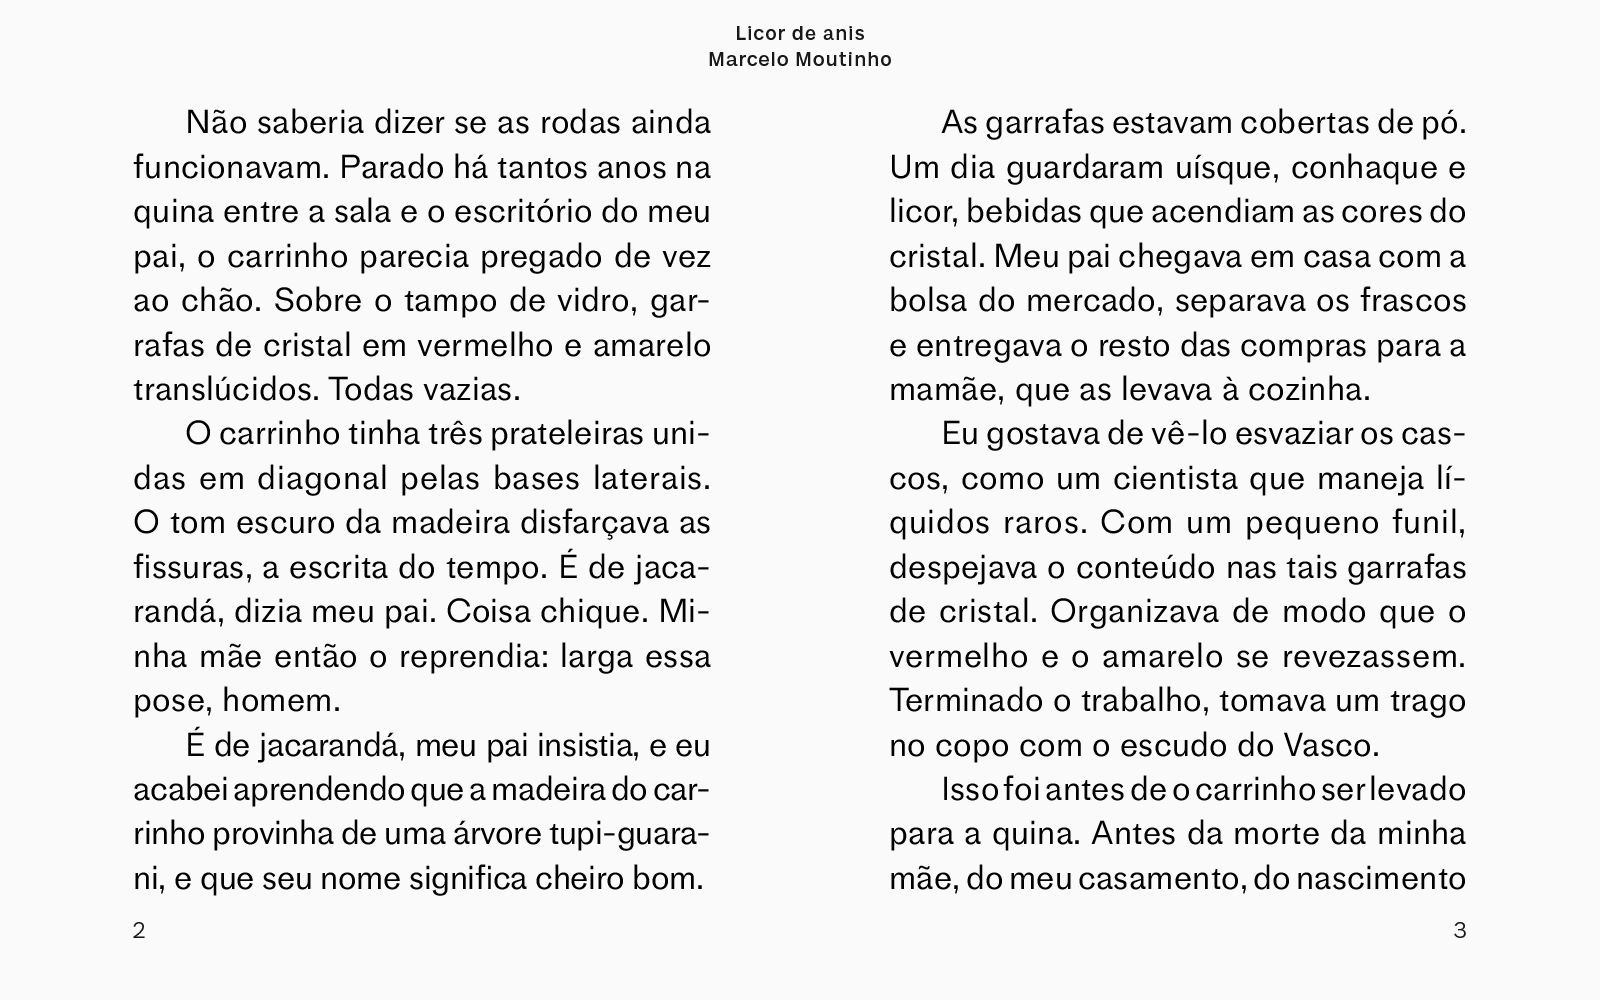 Lipe-Contos-08-Marcelo Moutinho-Site-2